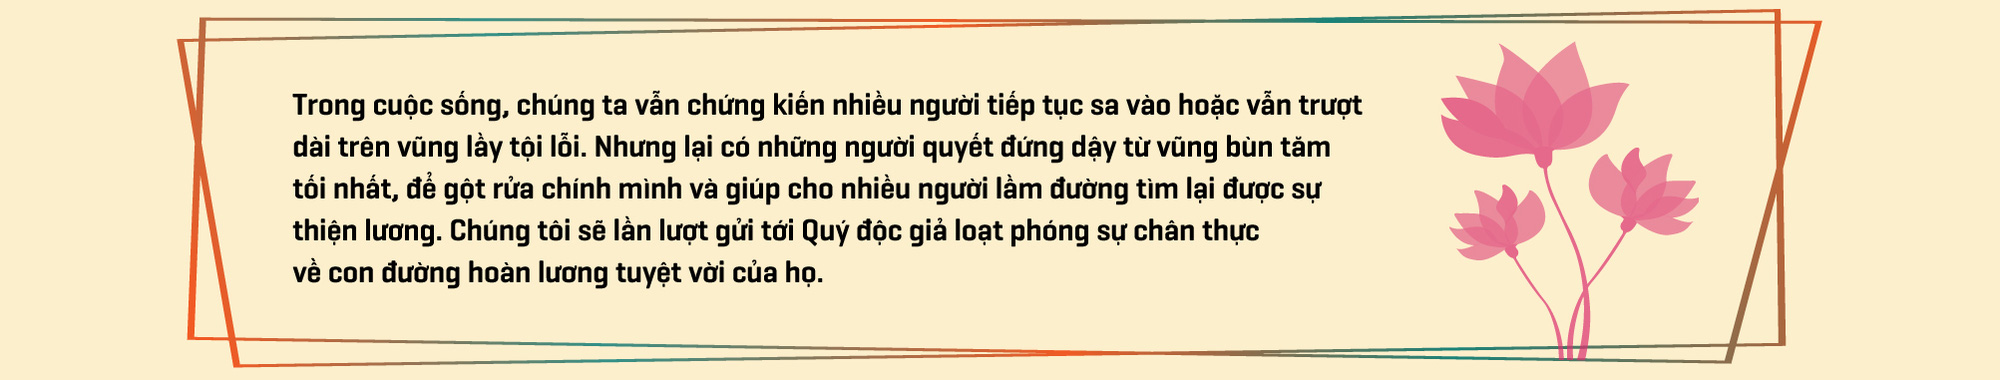 Con đường hoàn lương kỳ lạ của giang hồ khét tiếng Hà Nội – Quảng Ninh - Ảnh 1.